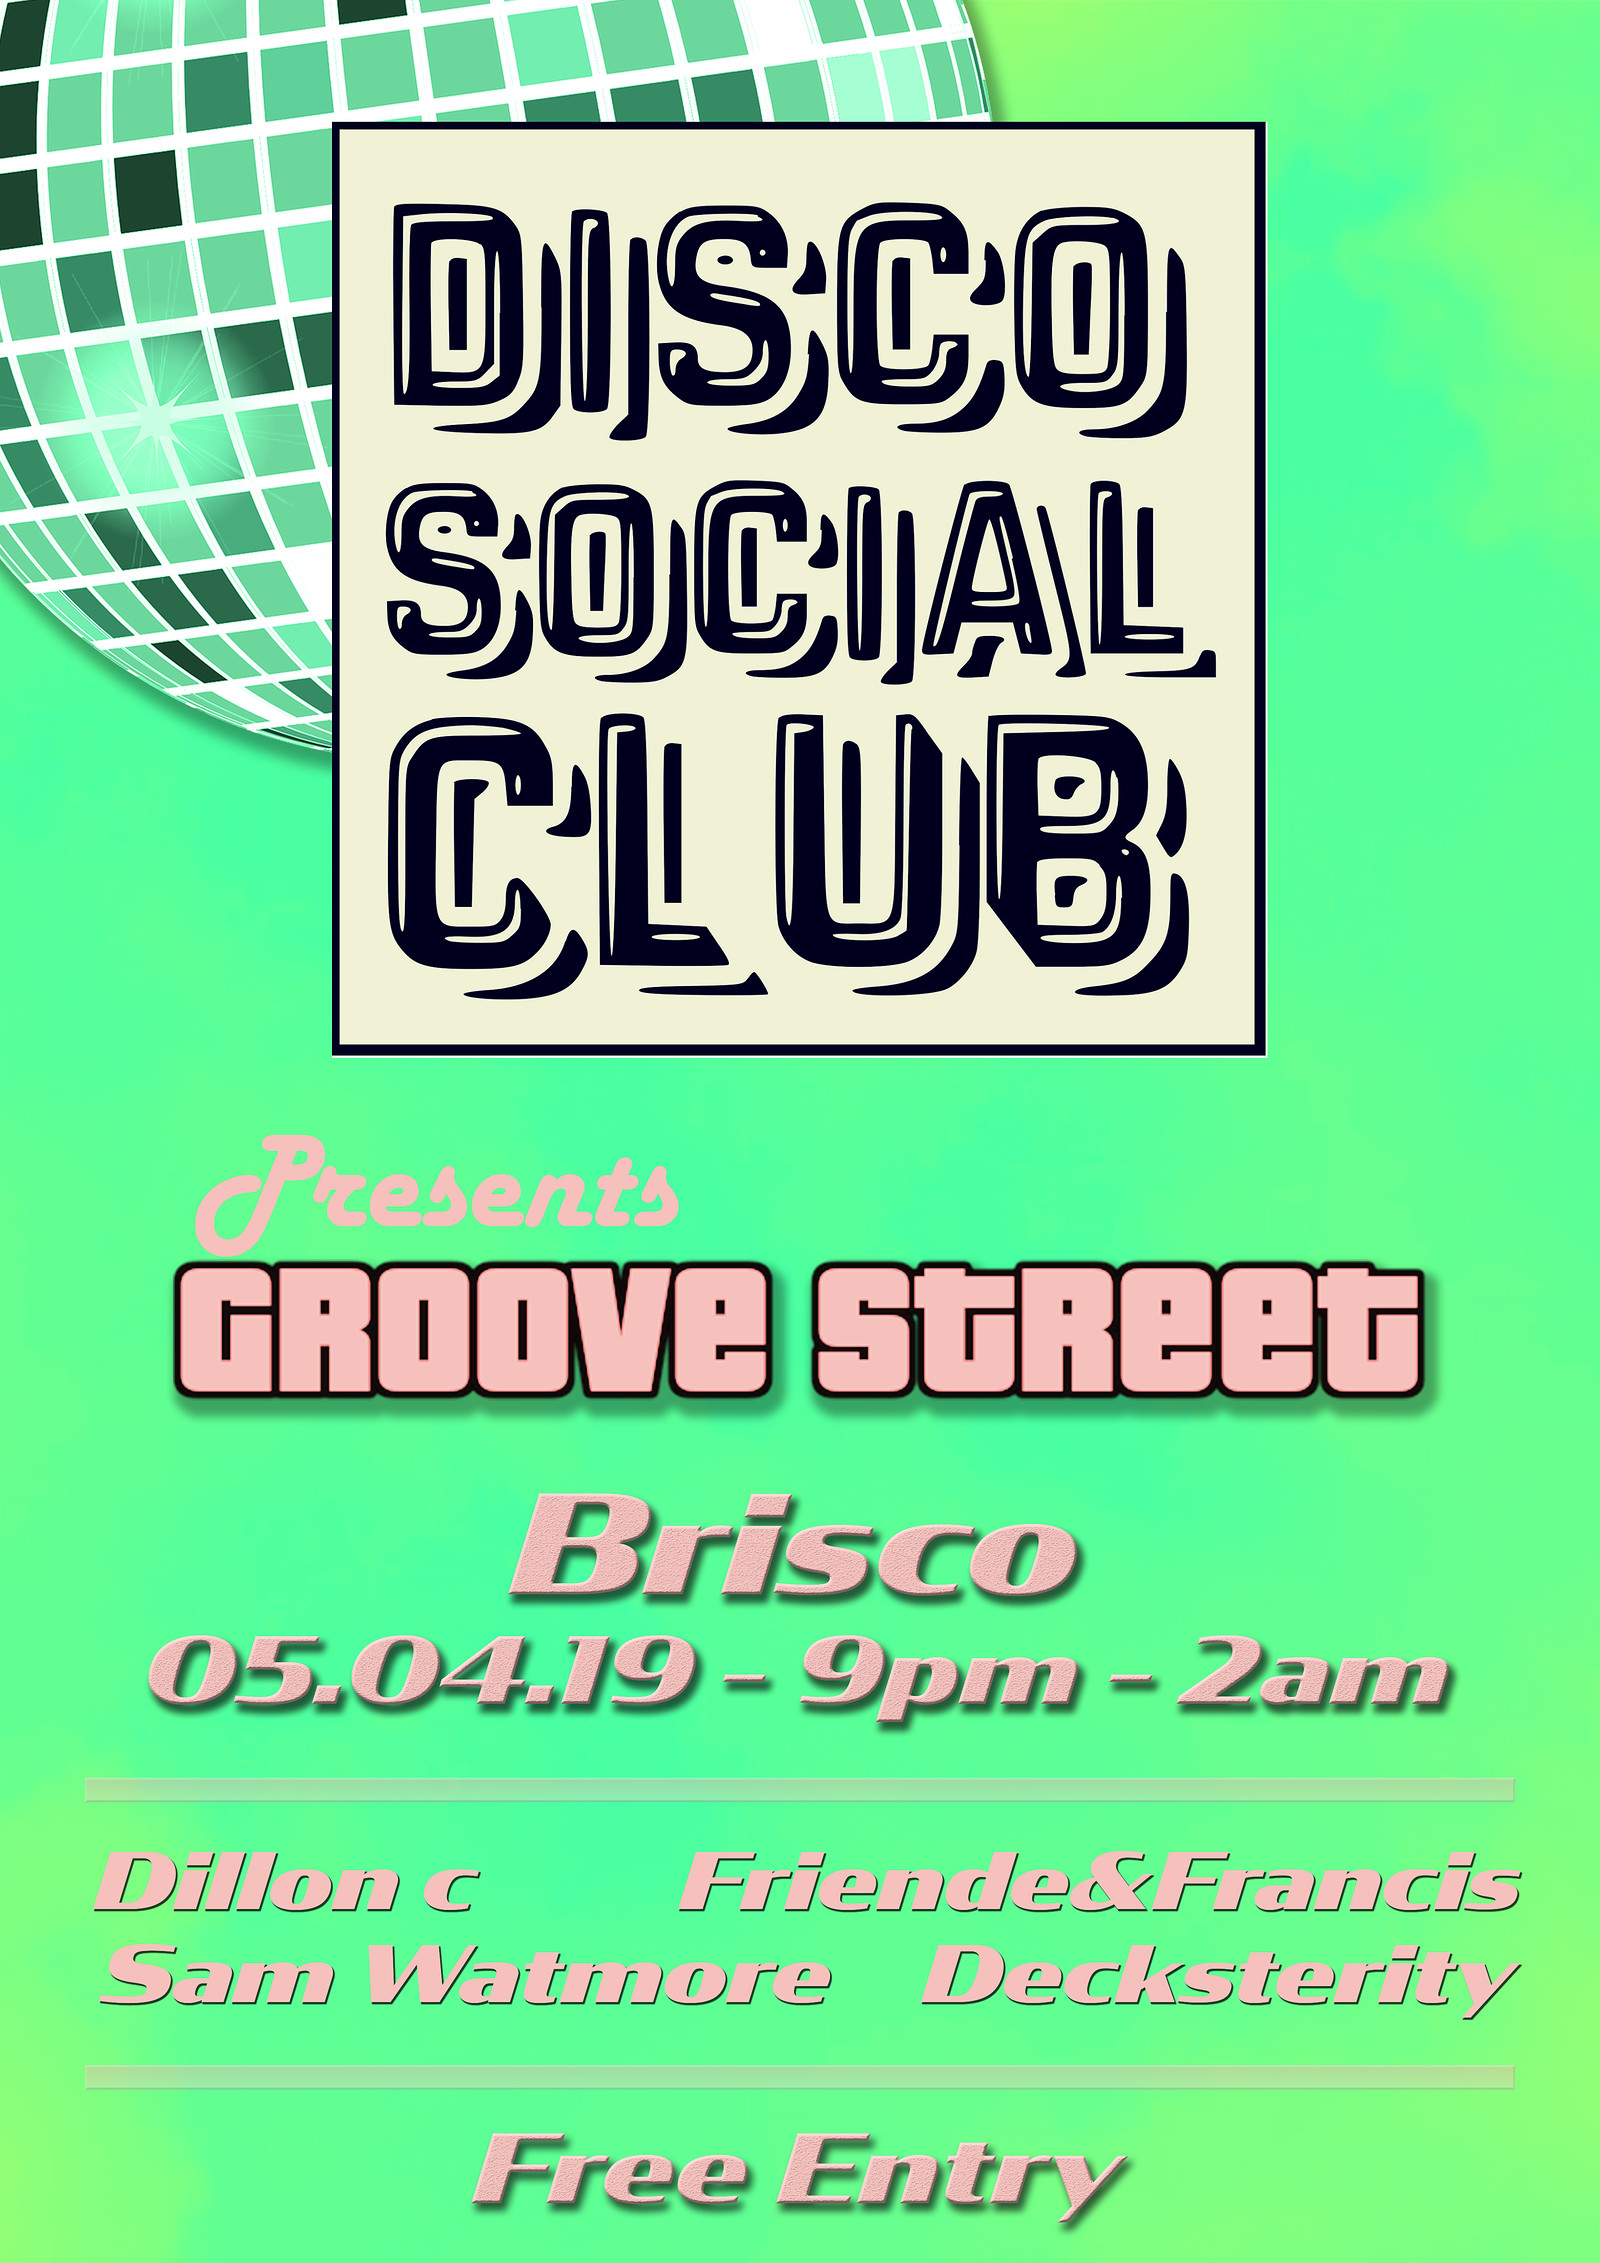 Disco Social Club IV: Groove Street at BRISCO